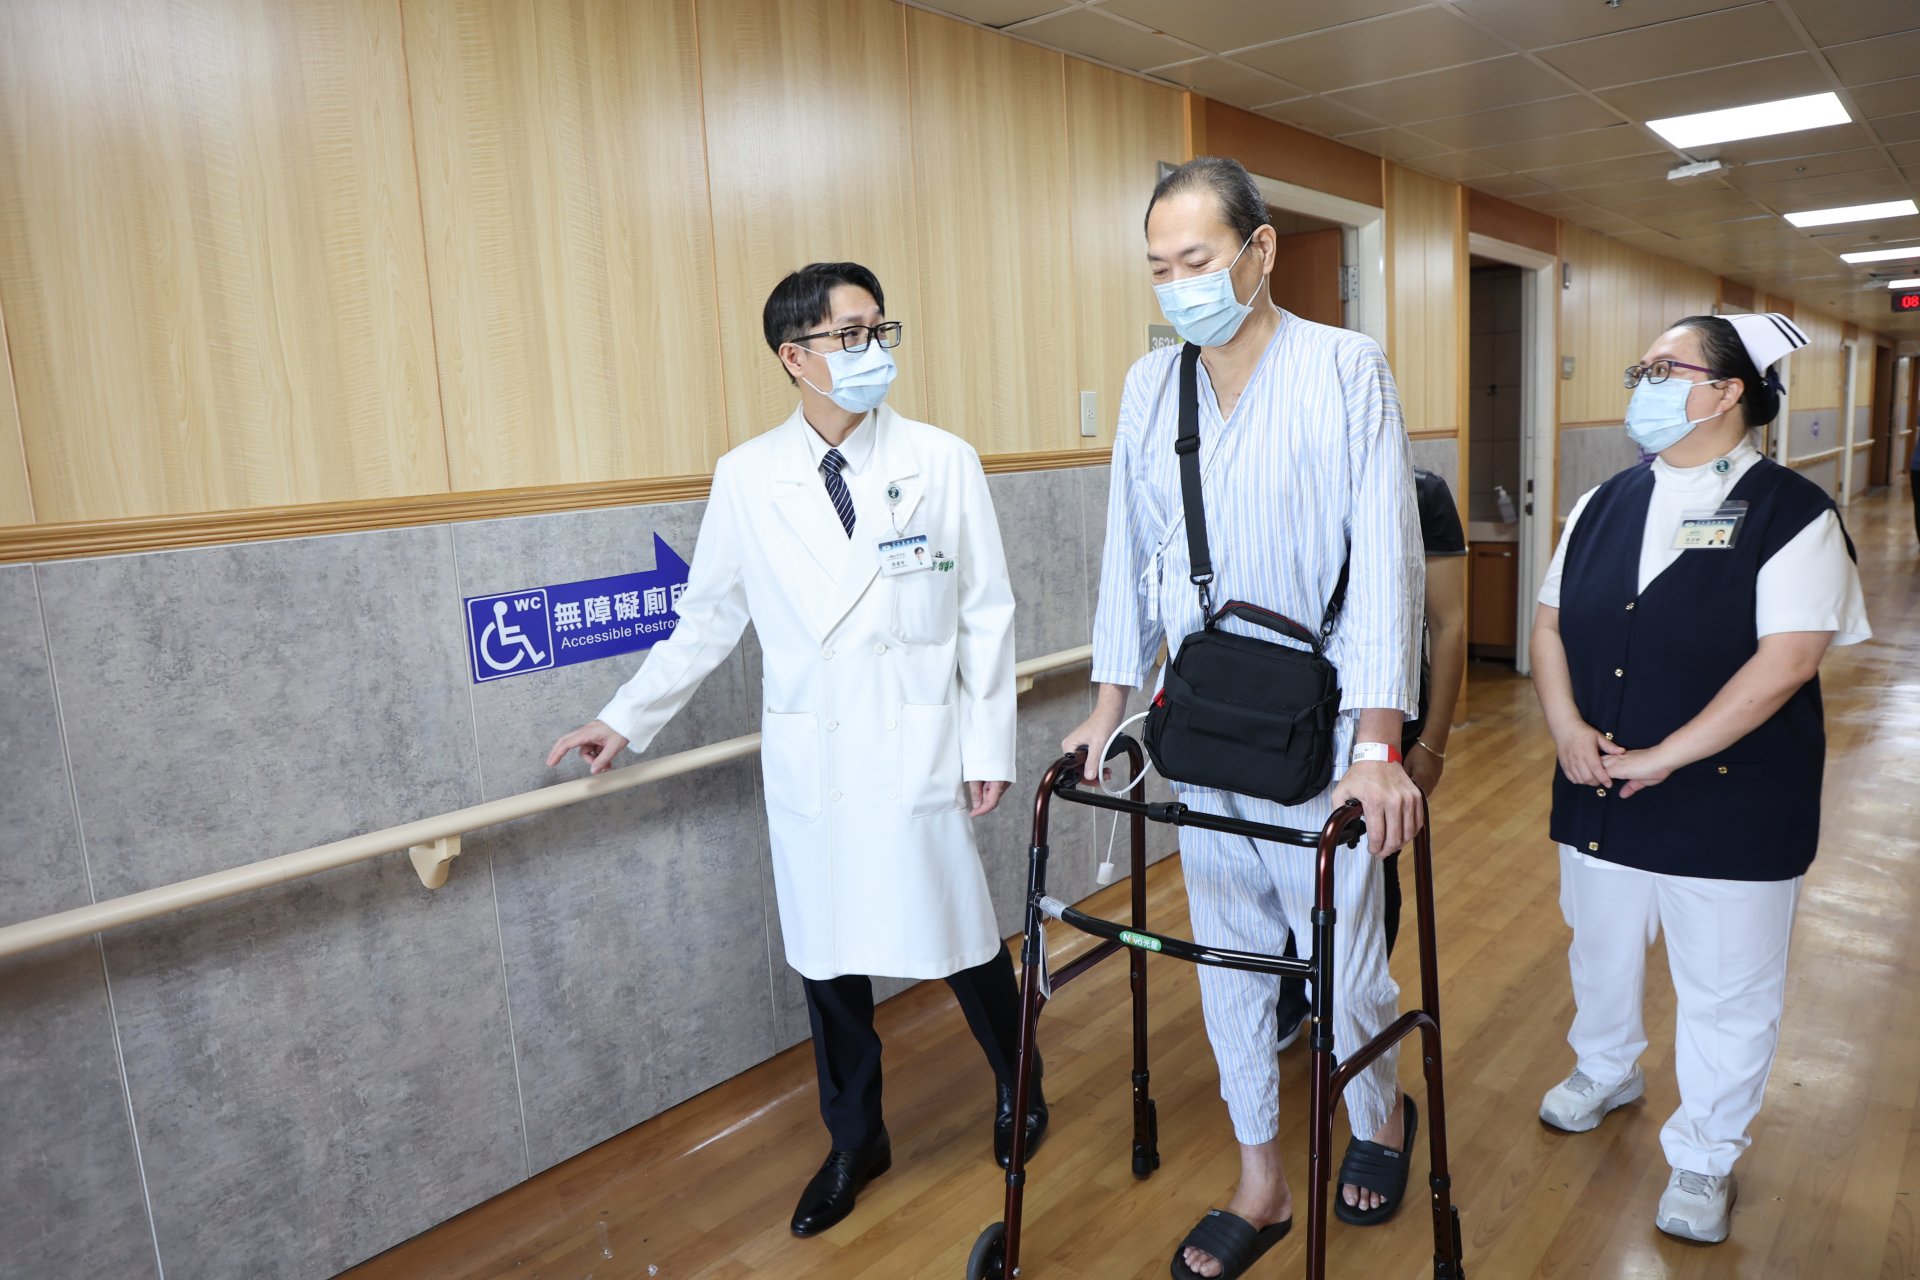 花蓮第一例使用長效型心室輔助器的趙先生(中)，非常感謝張睿智醫師(左)與團隊這麼認真又細心的照護，他一定會好好的活著，來回饋醫療團隊。